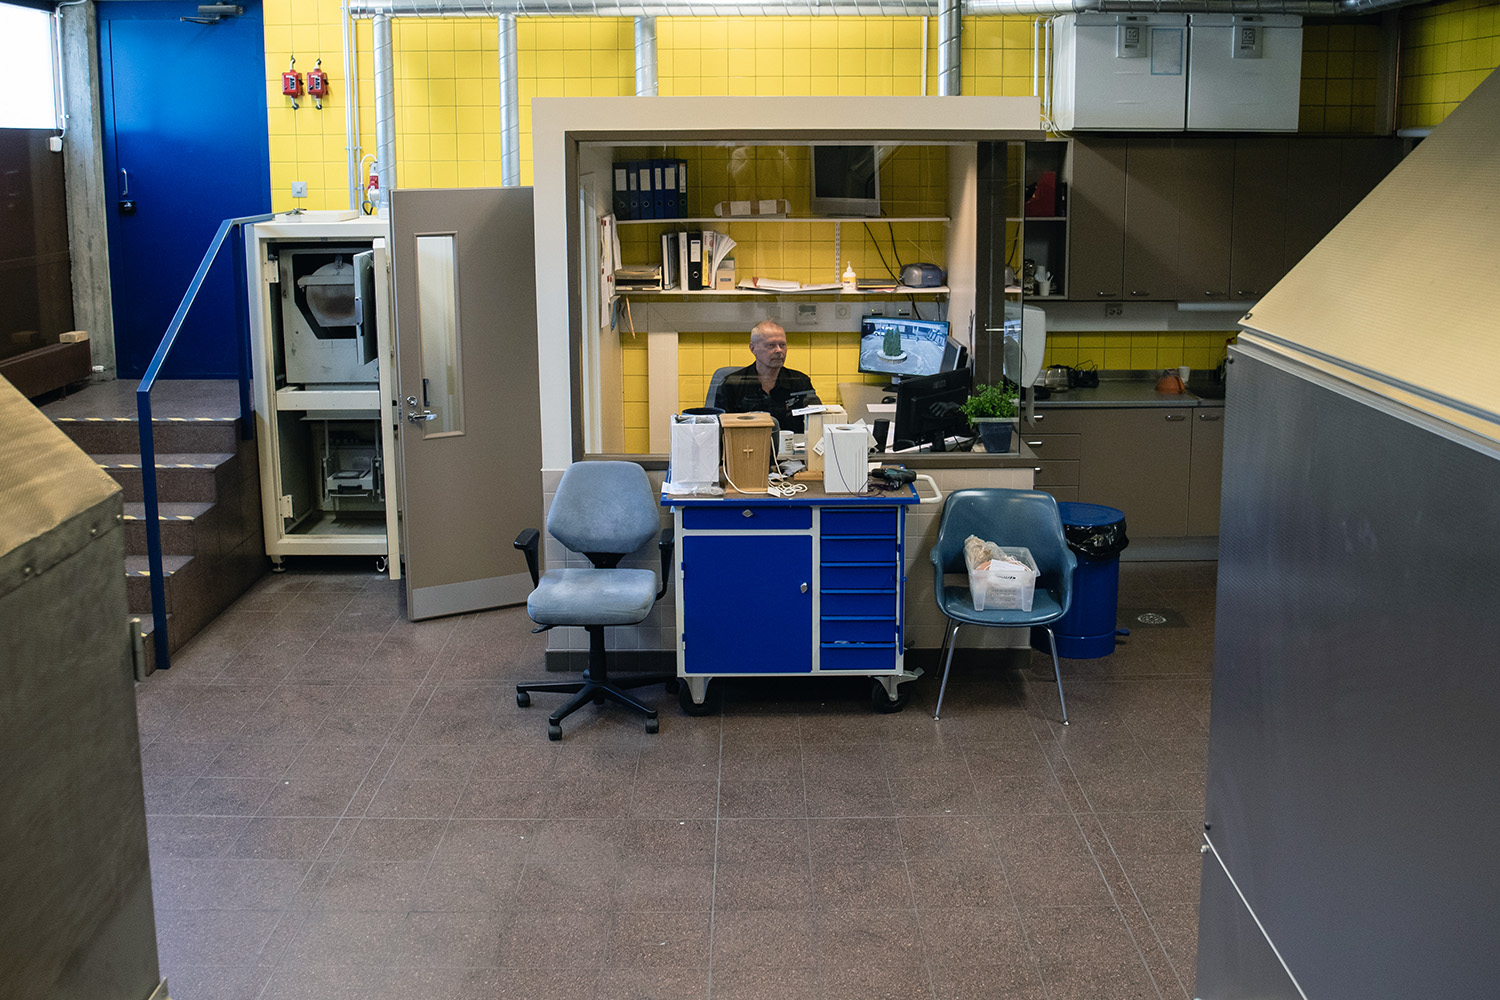 Vesa Korpi sitter vid ett arbetsbord i ett rum med gula kakel.